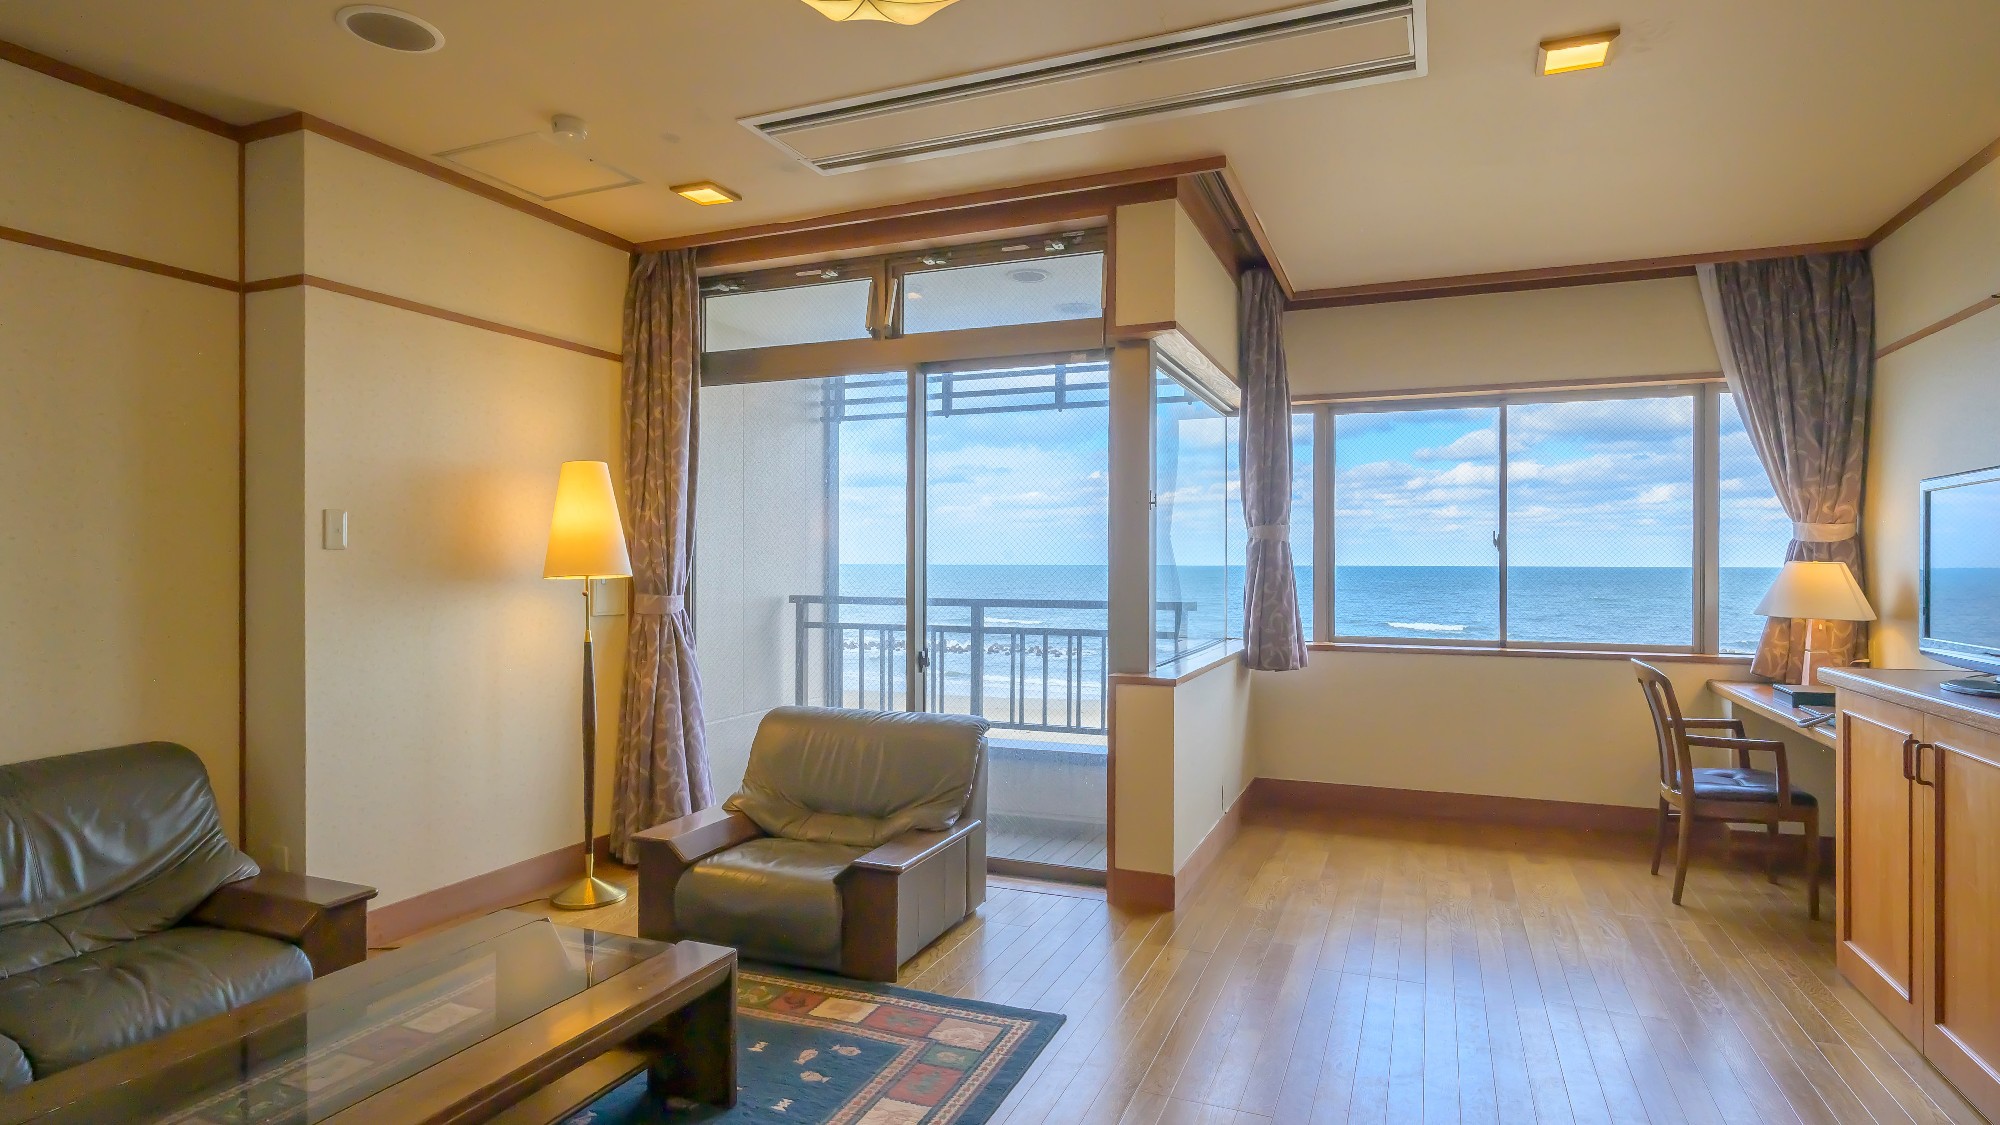 【温泉露天風呂付き離れ】霽海-seikai-メゾネットタイプのお部屋はまるで、洋別荘のような空間です